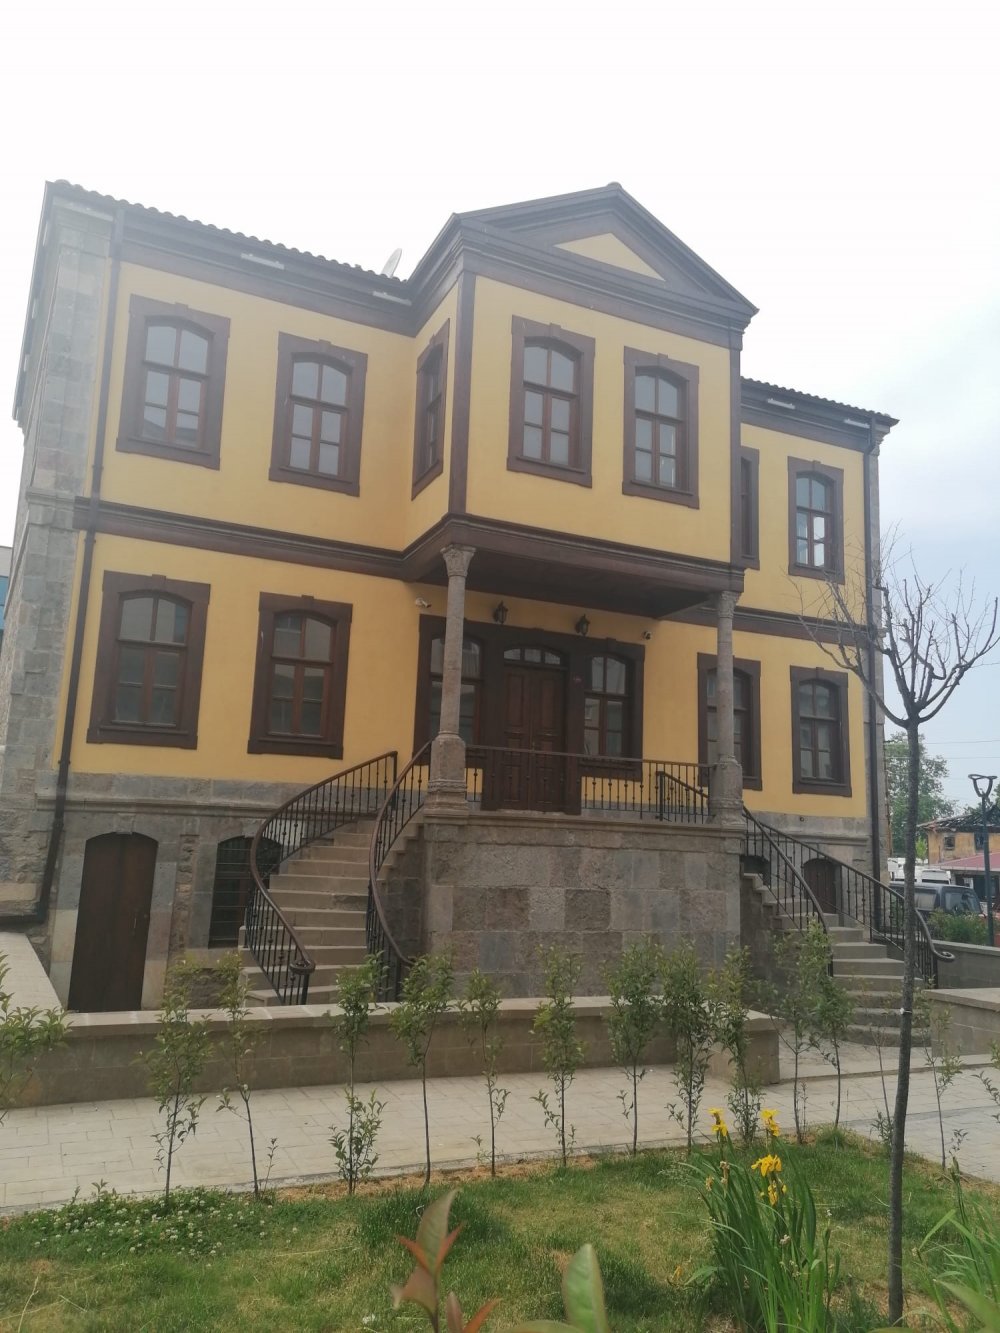 Trabzon’da tarihi bina ile ilgili karar verildi